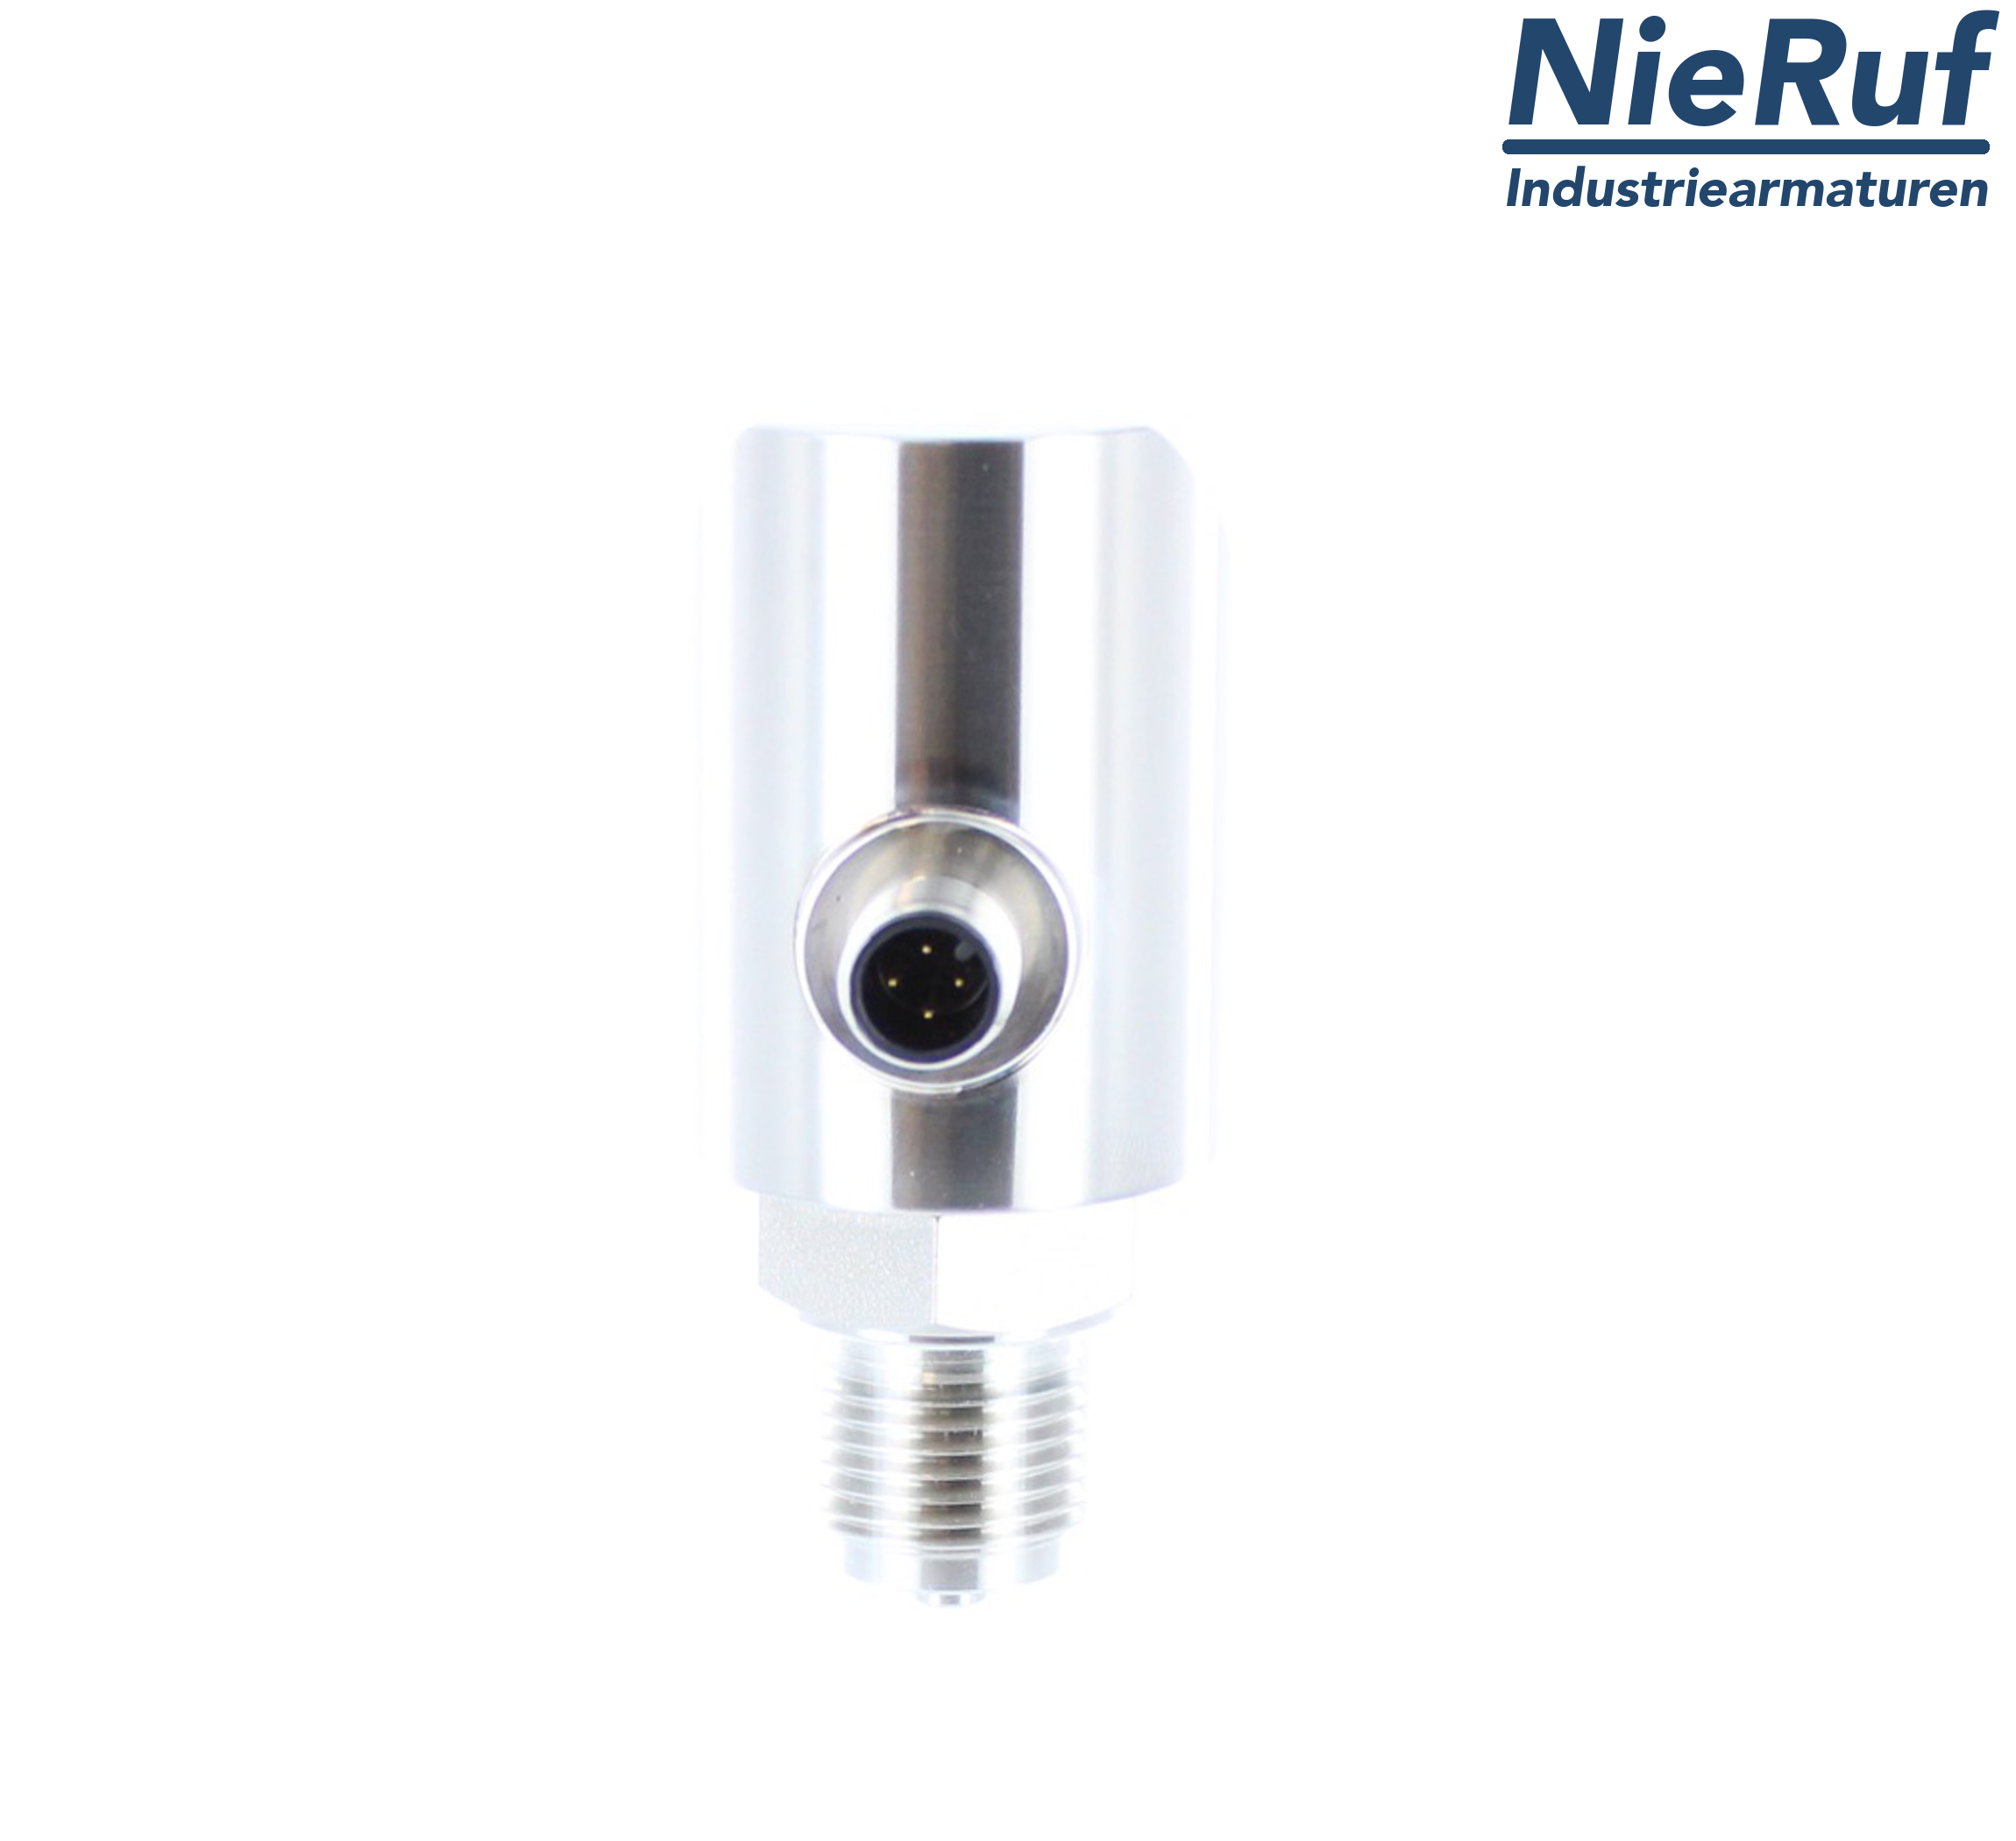 digital pressure sensor G 1/2" B IB 5-wire: 2xPNP, 1x4 - 20mA FPM 0,0 - 160,0 bar